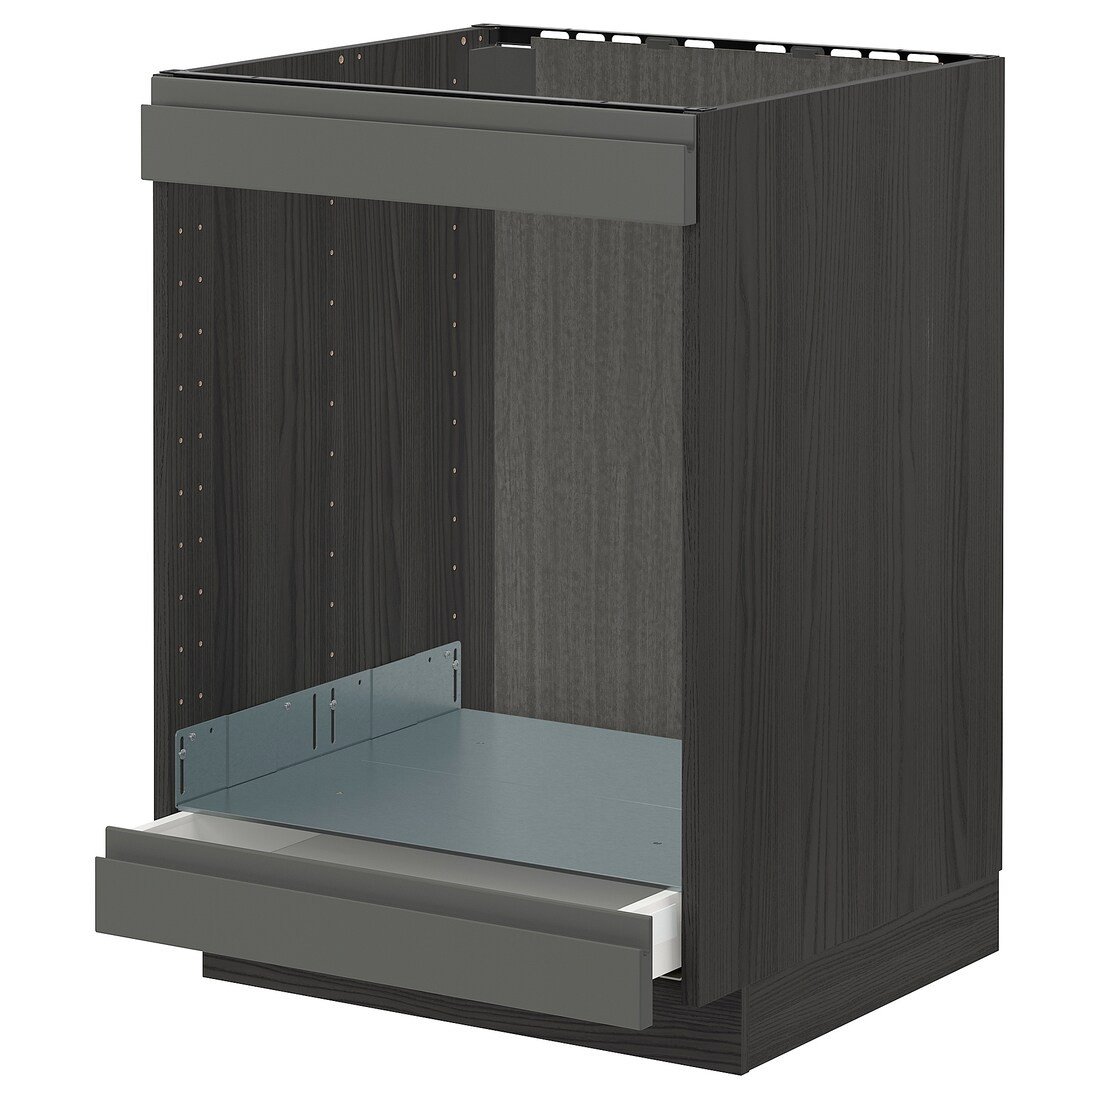 METOD МЕТОД / MAXIMERA МАКСИМЕРА Шкаф под духовку / варочную поверхность / с ящиком, черный / Voxtorp темно-серый, 60x60 см